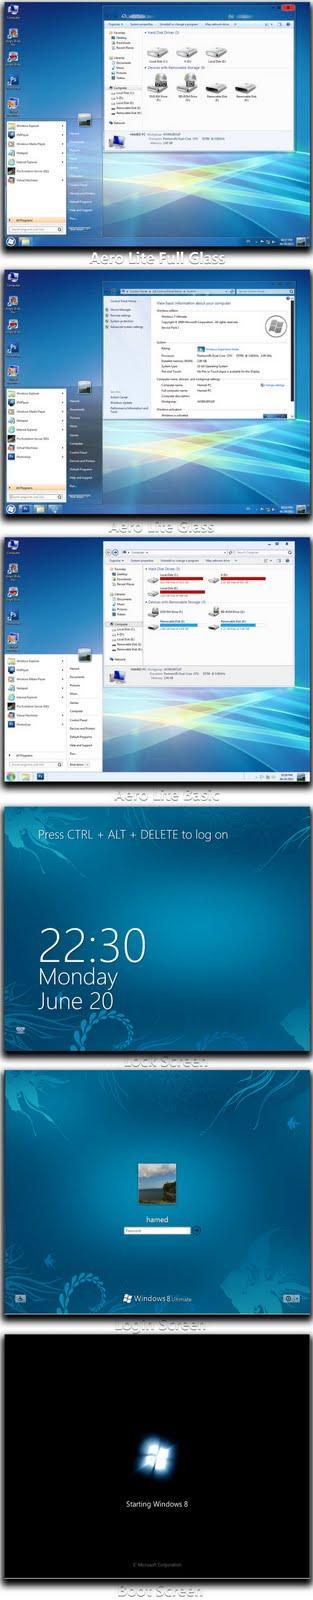 Transforma tu Windows 7 en Windows 8